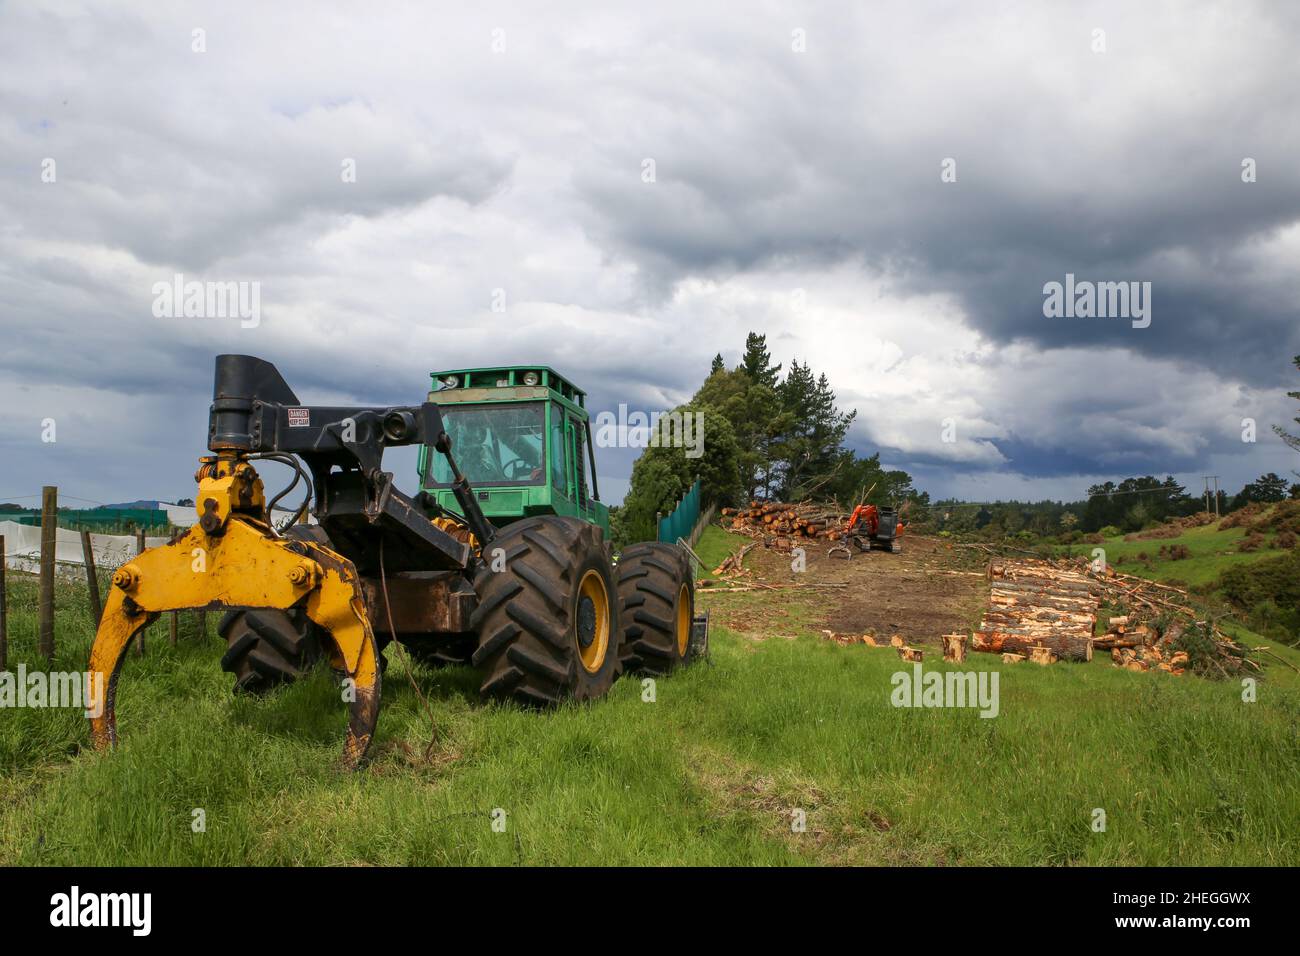 La maquinaria forestal, utilizada para caer pinos y apilar troncos en tierras agrícolas, está estacionada para el fin de semana en North Island, Nueva Zelanda Foto de stock